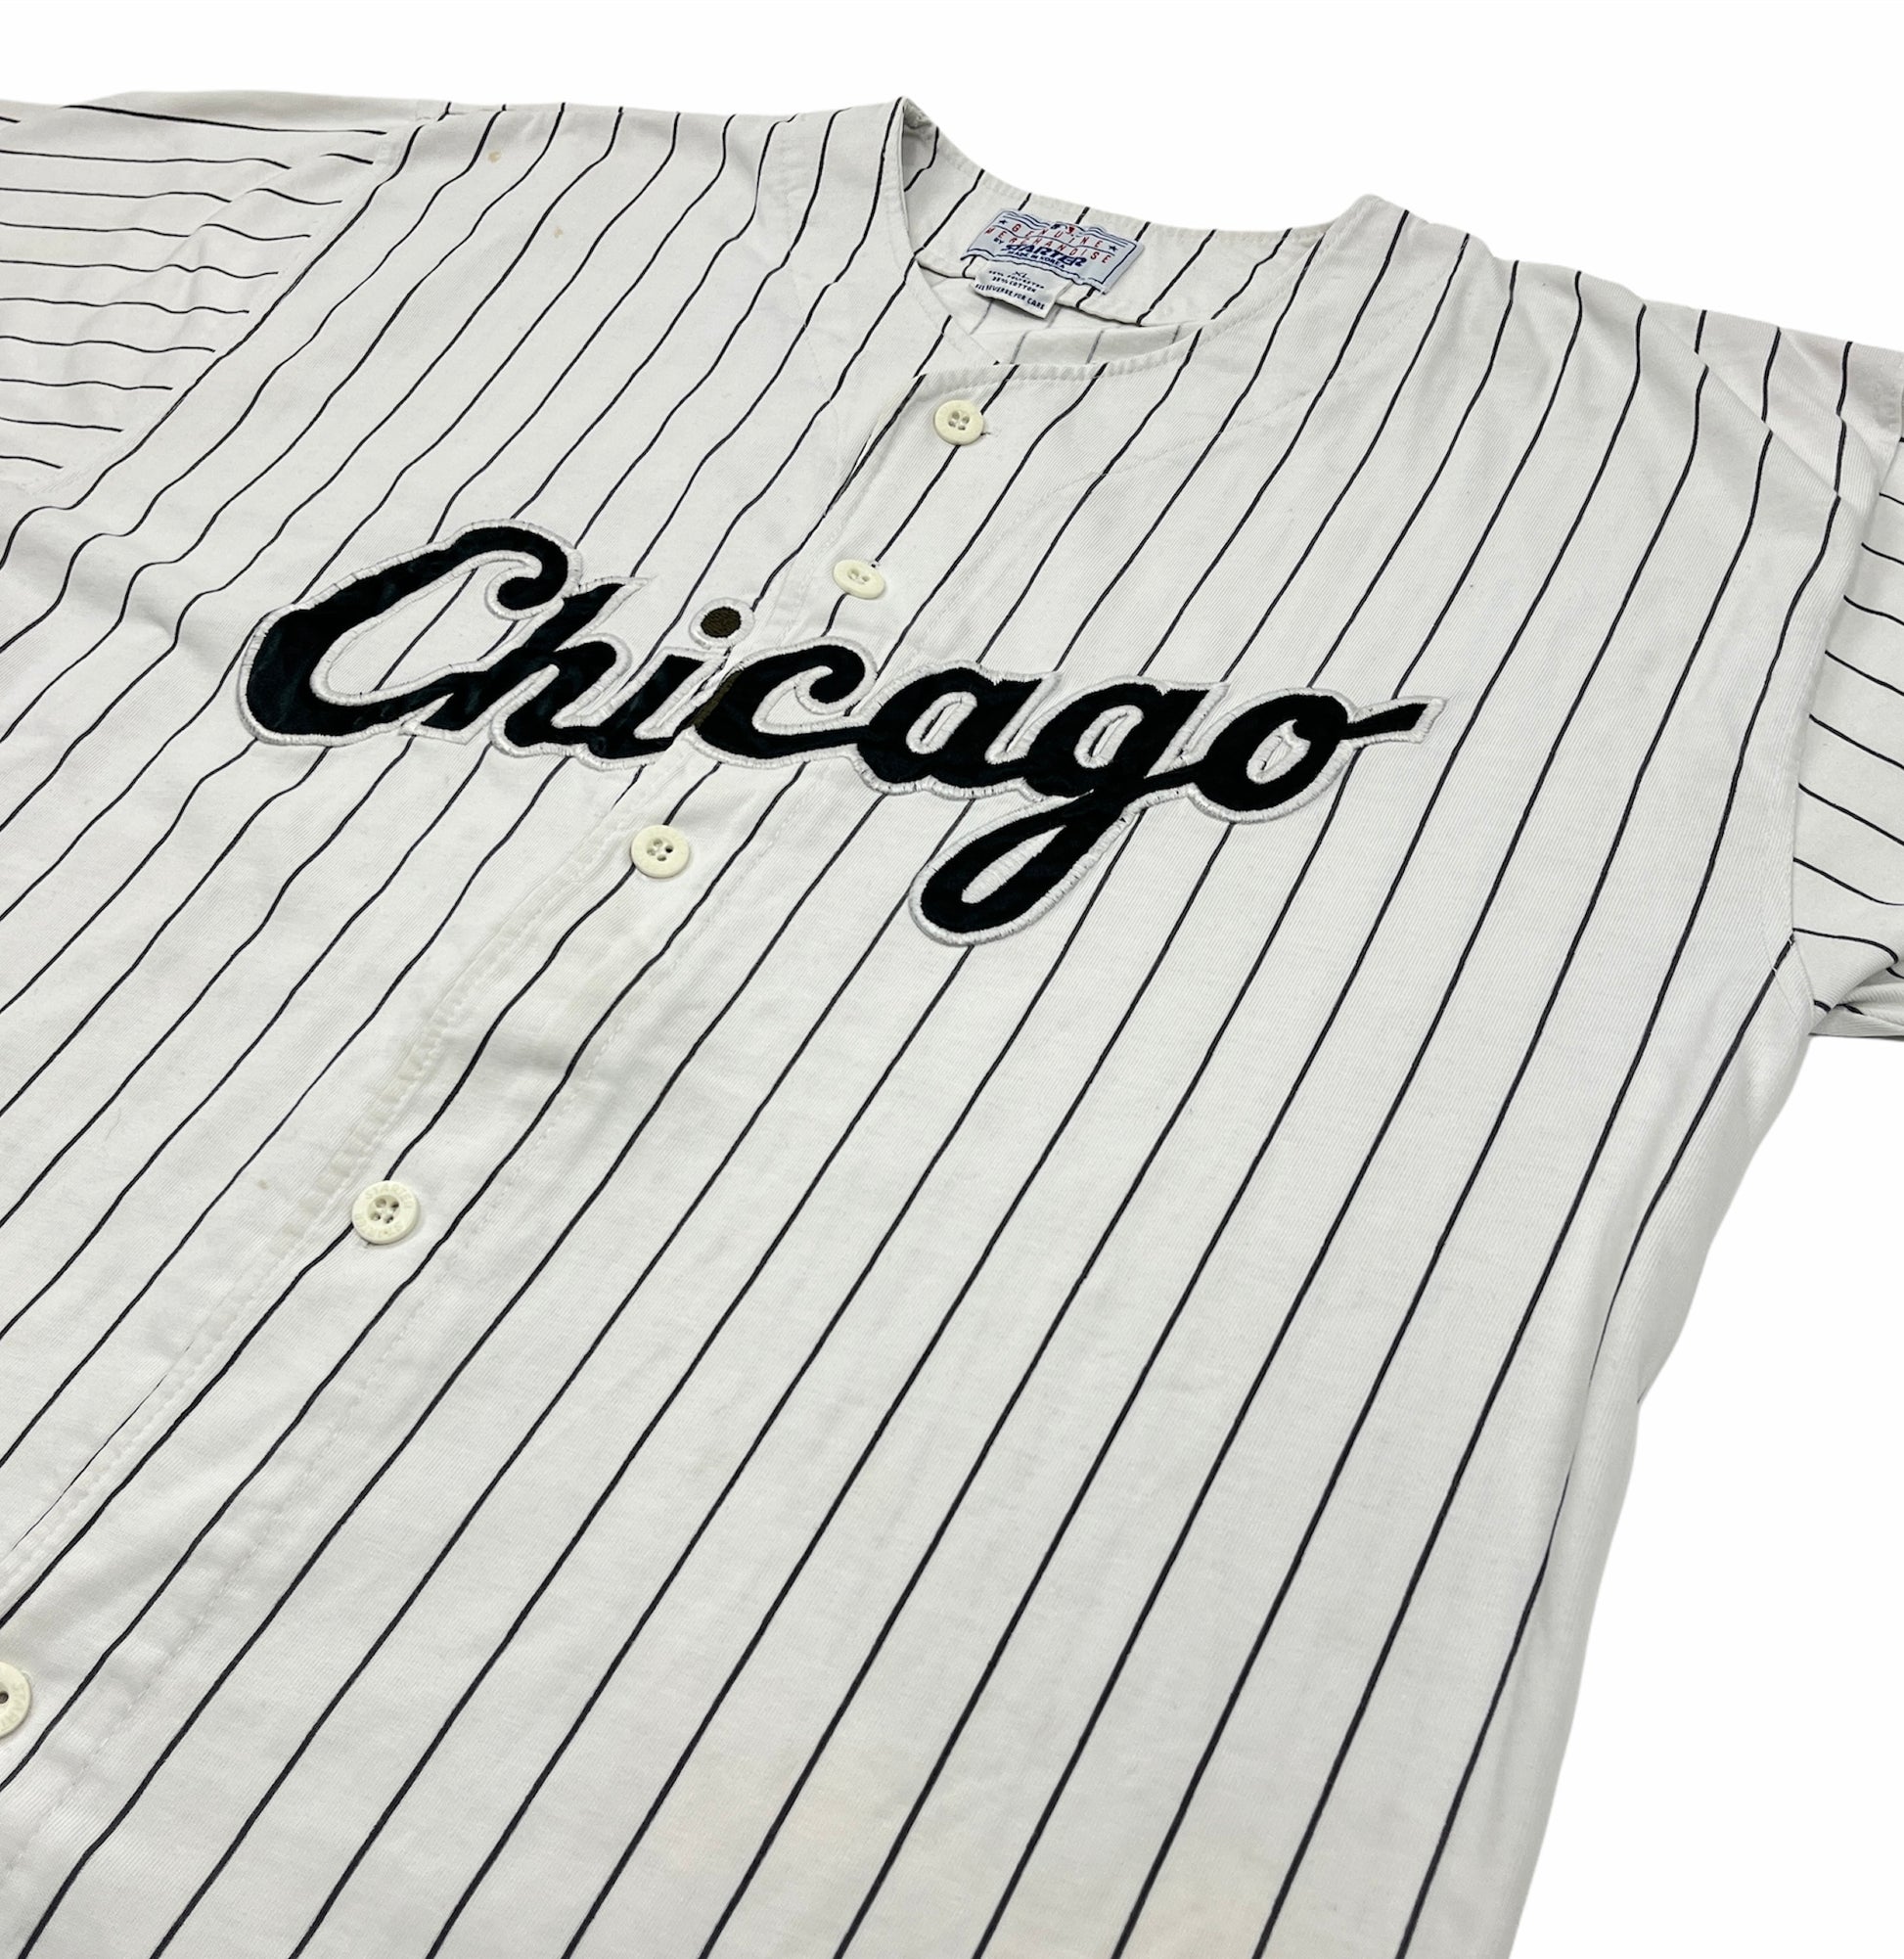 Vintage Chicago Bulls Starter Baseball Jersey